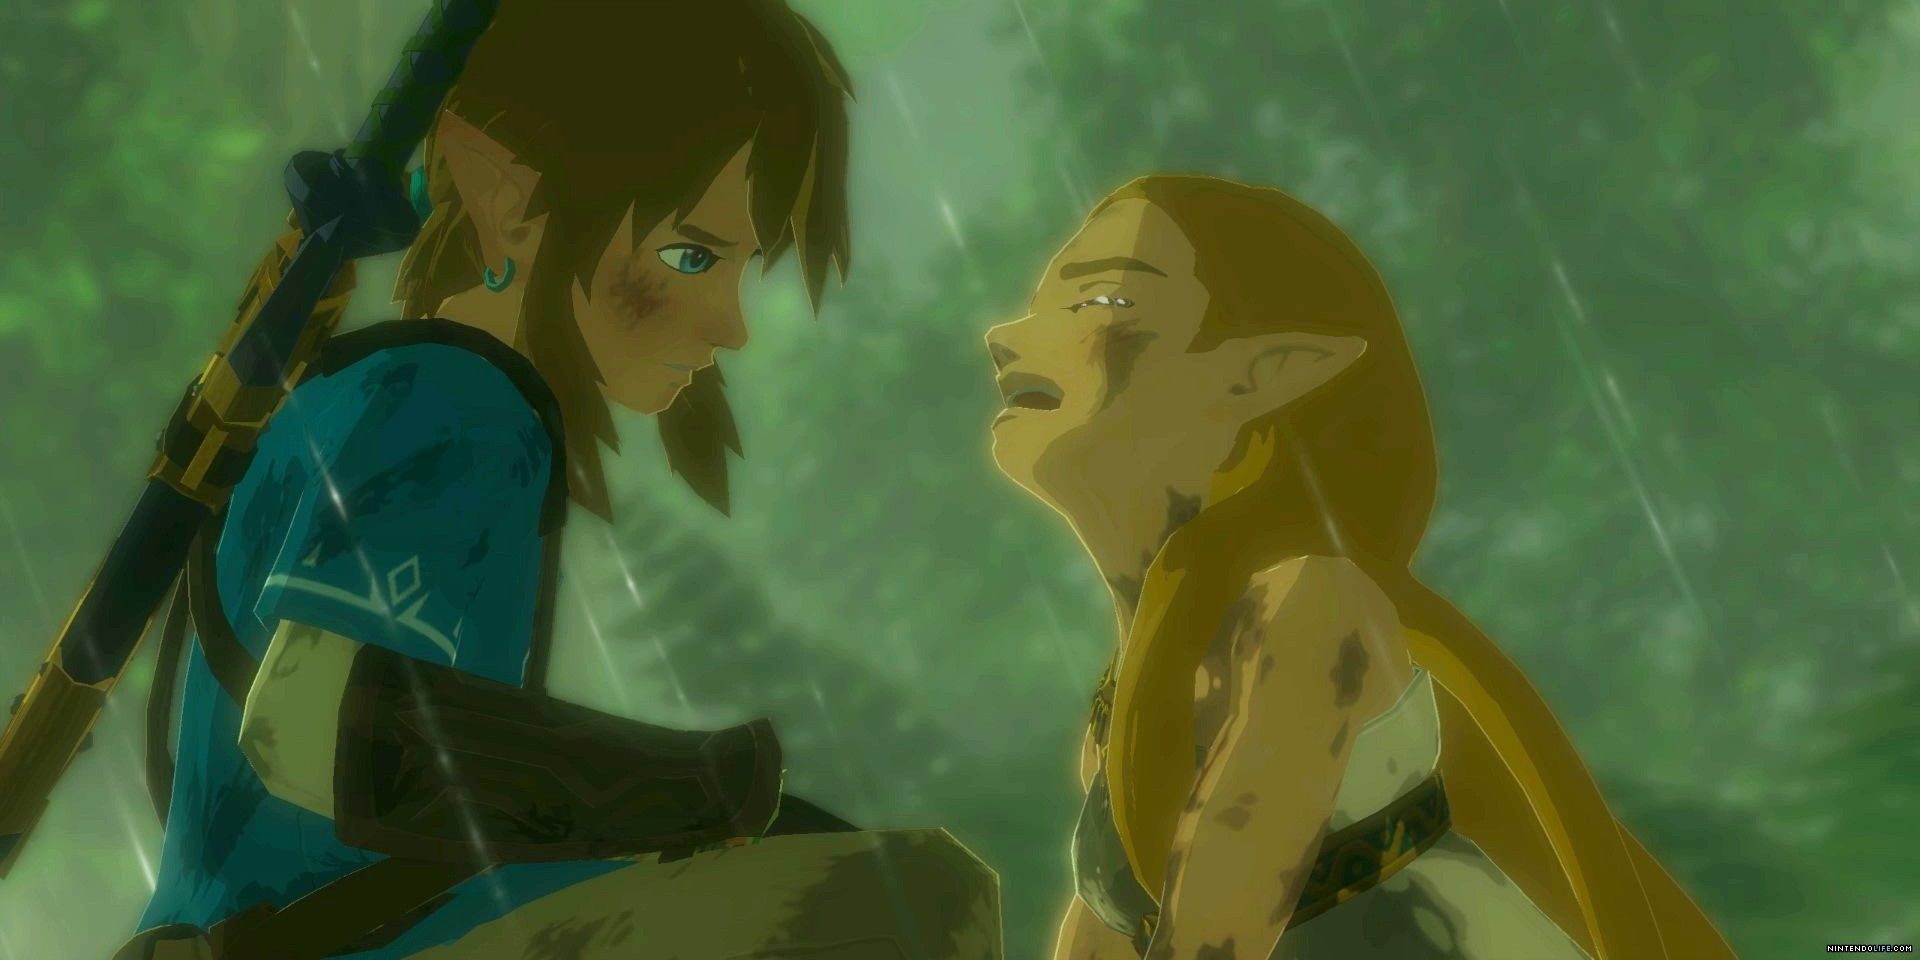 How Botw 2 Could Benefit From Romance Between Link & Zelda